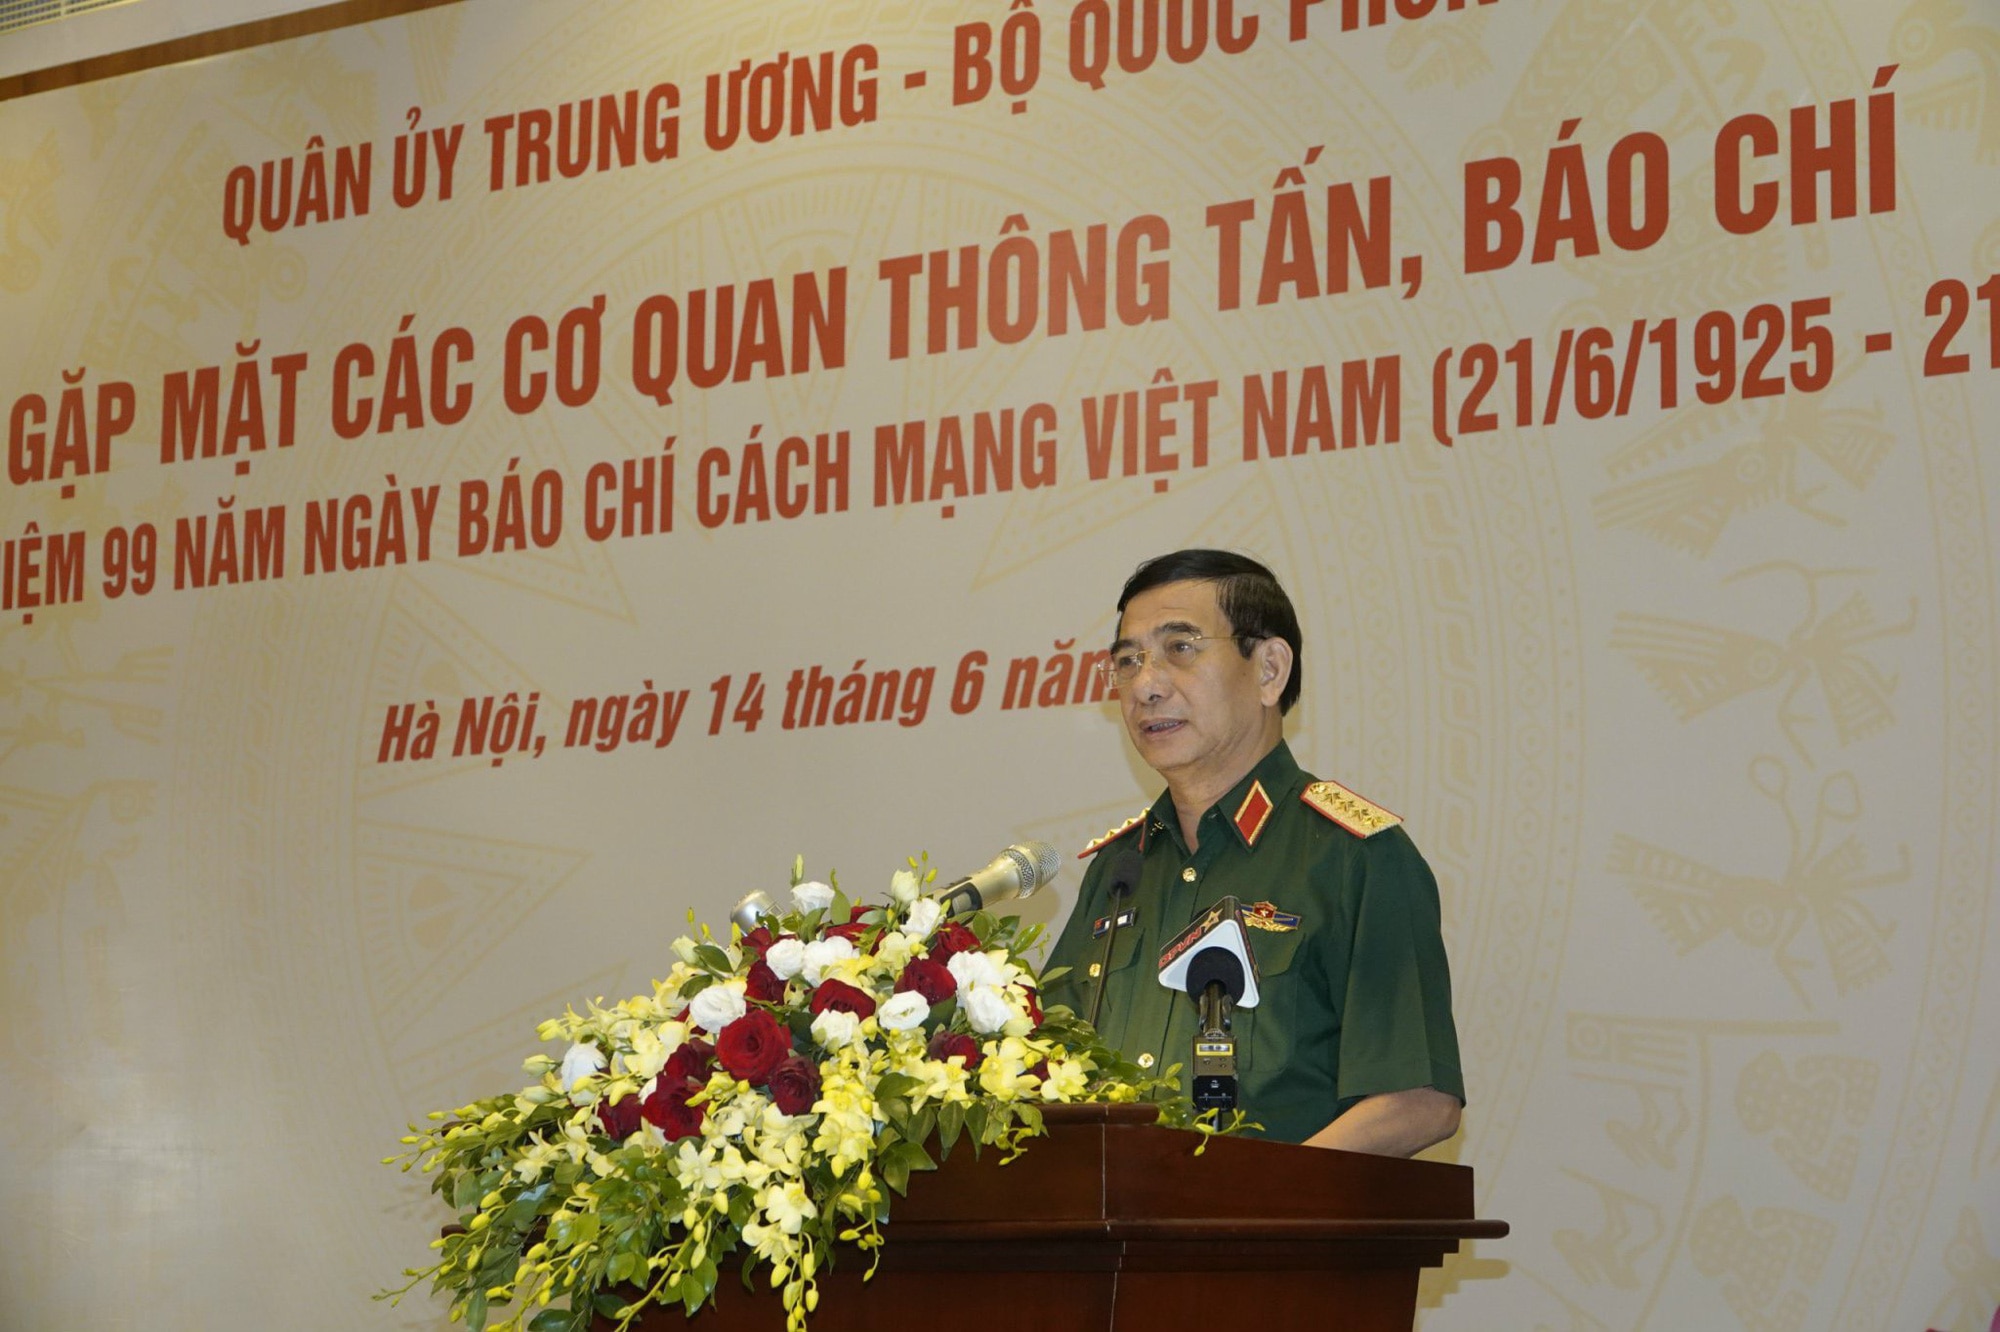 Đại tướng Phan Văn Giang phát biểu tại buổi gặp mặt - Ảnh: THỤY DU